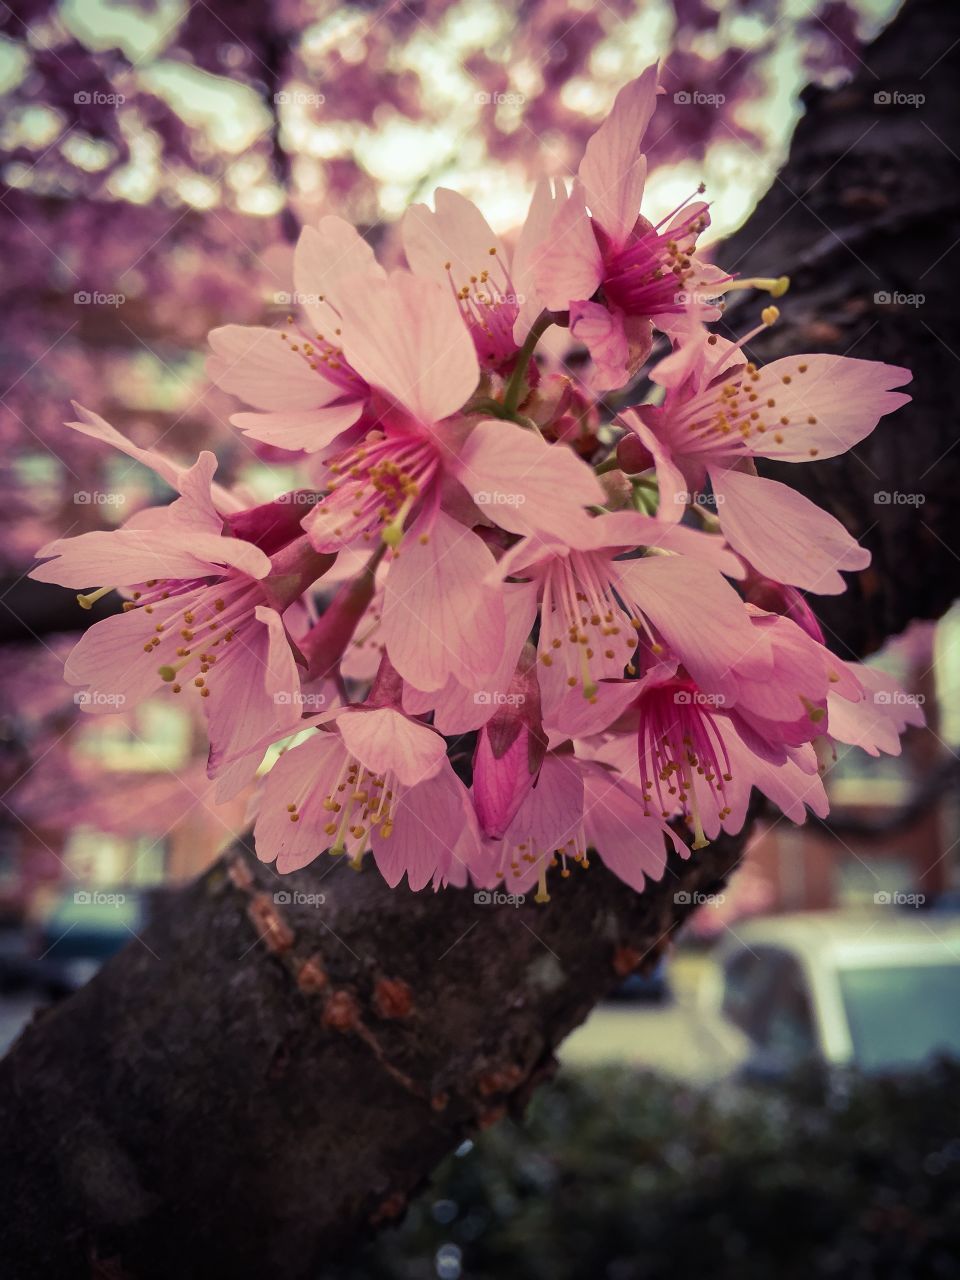 Spring blossom
